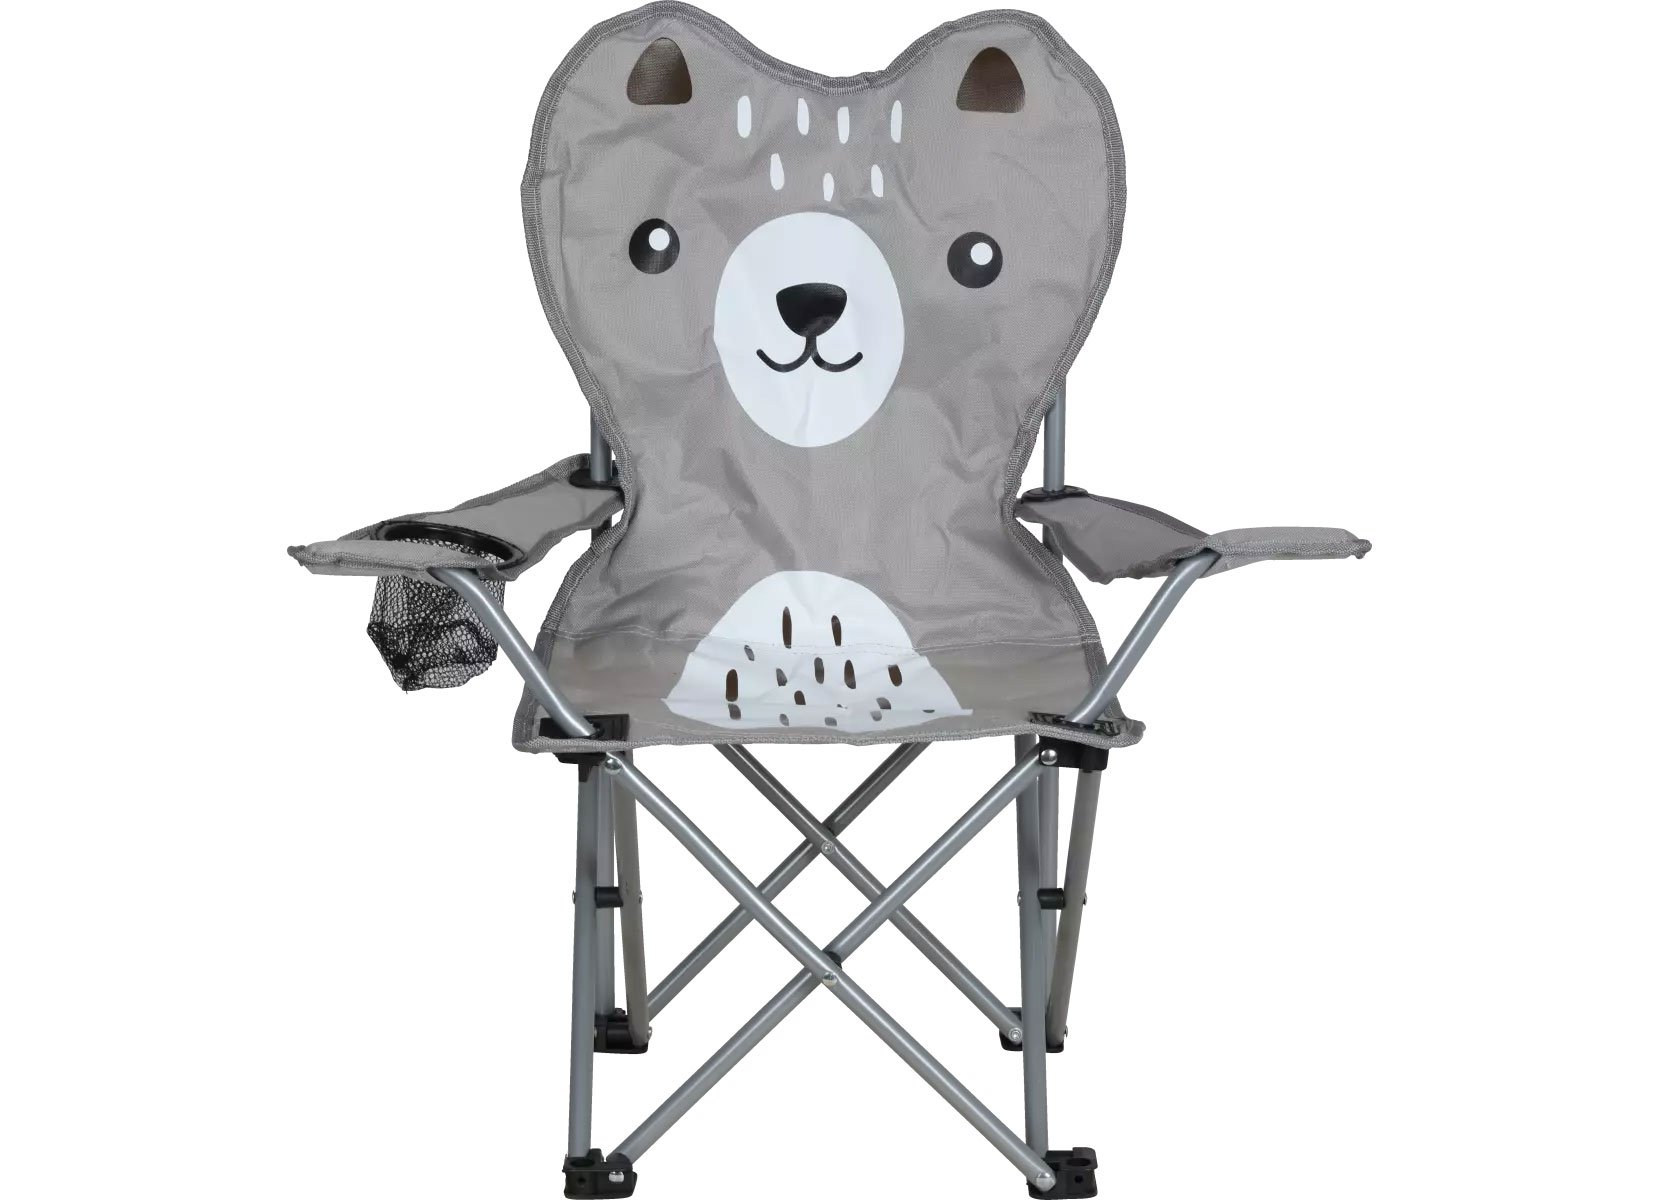 Kinder-Campingstuhl im Tierdesign Bär